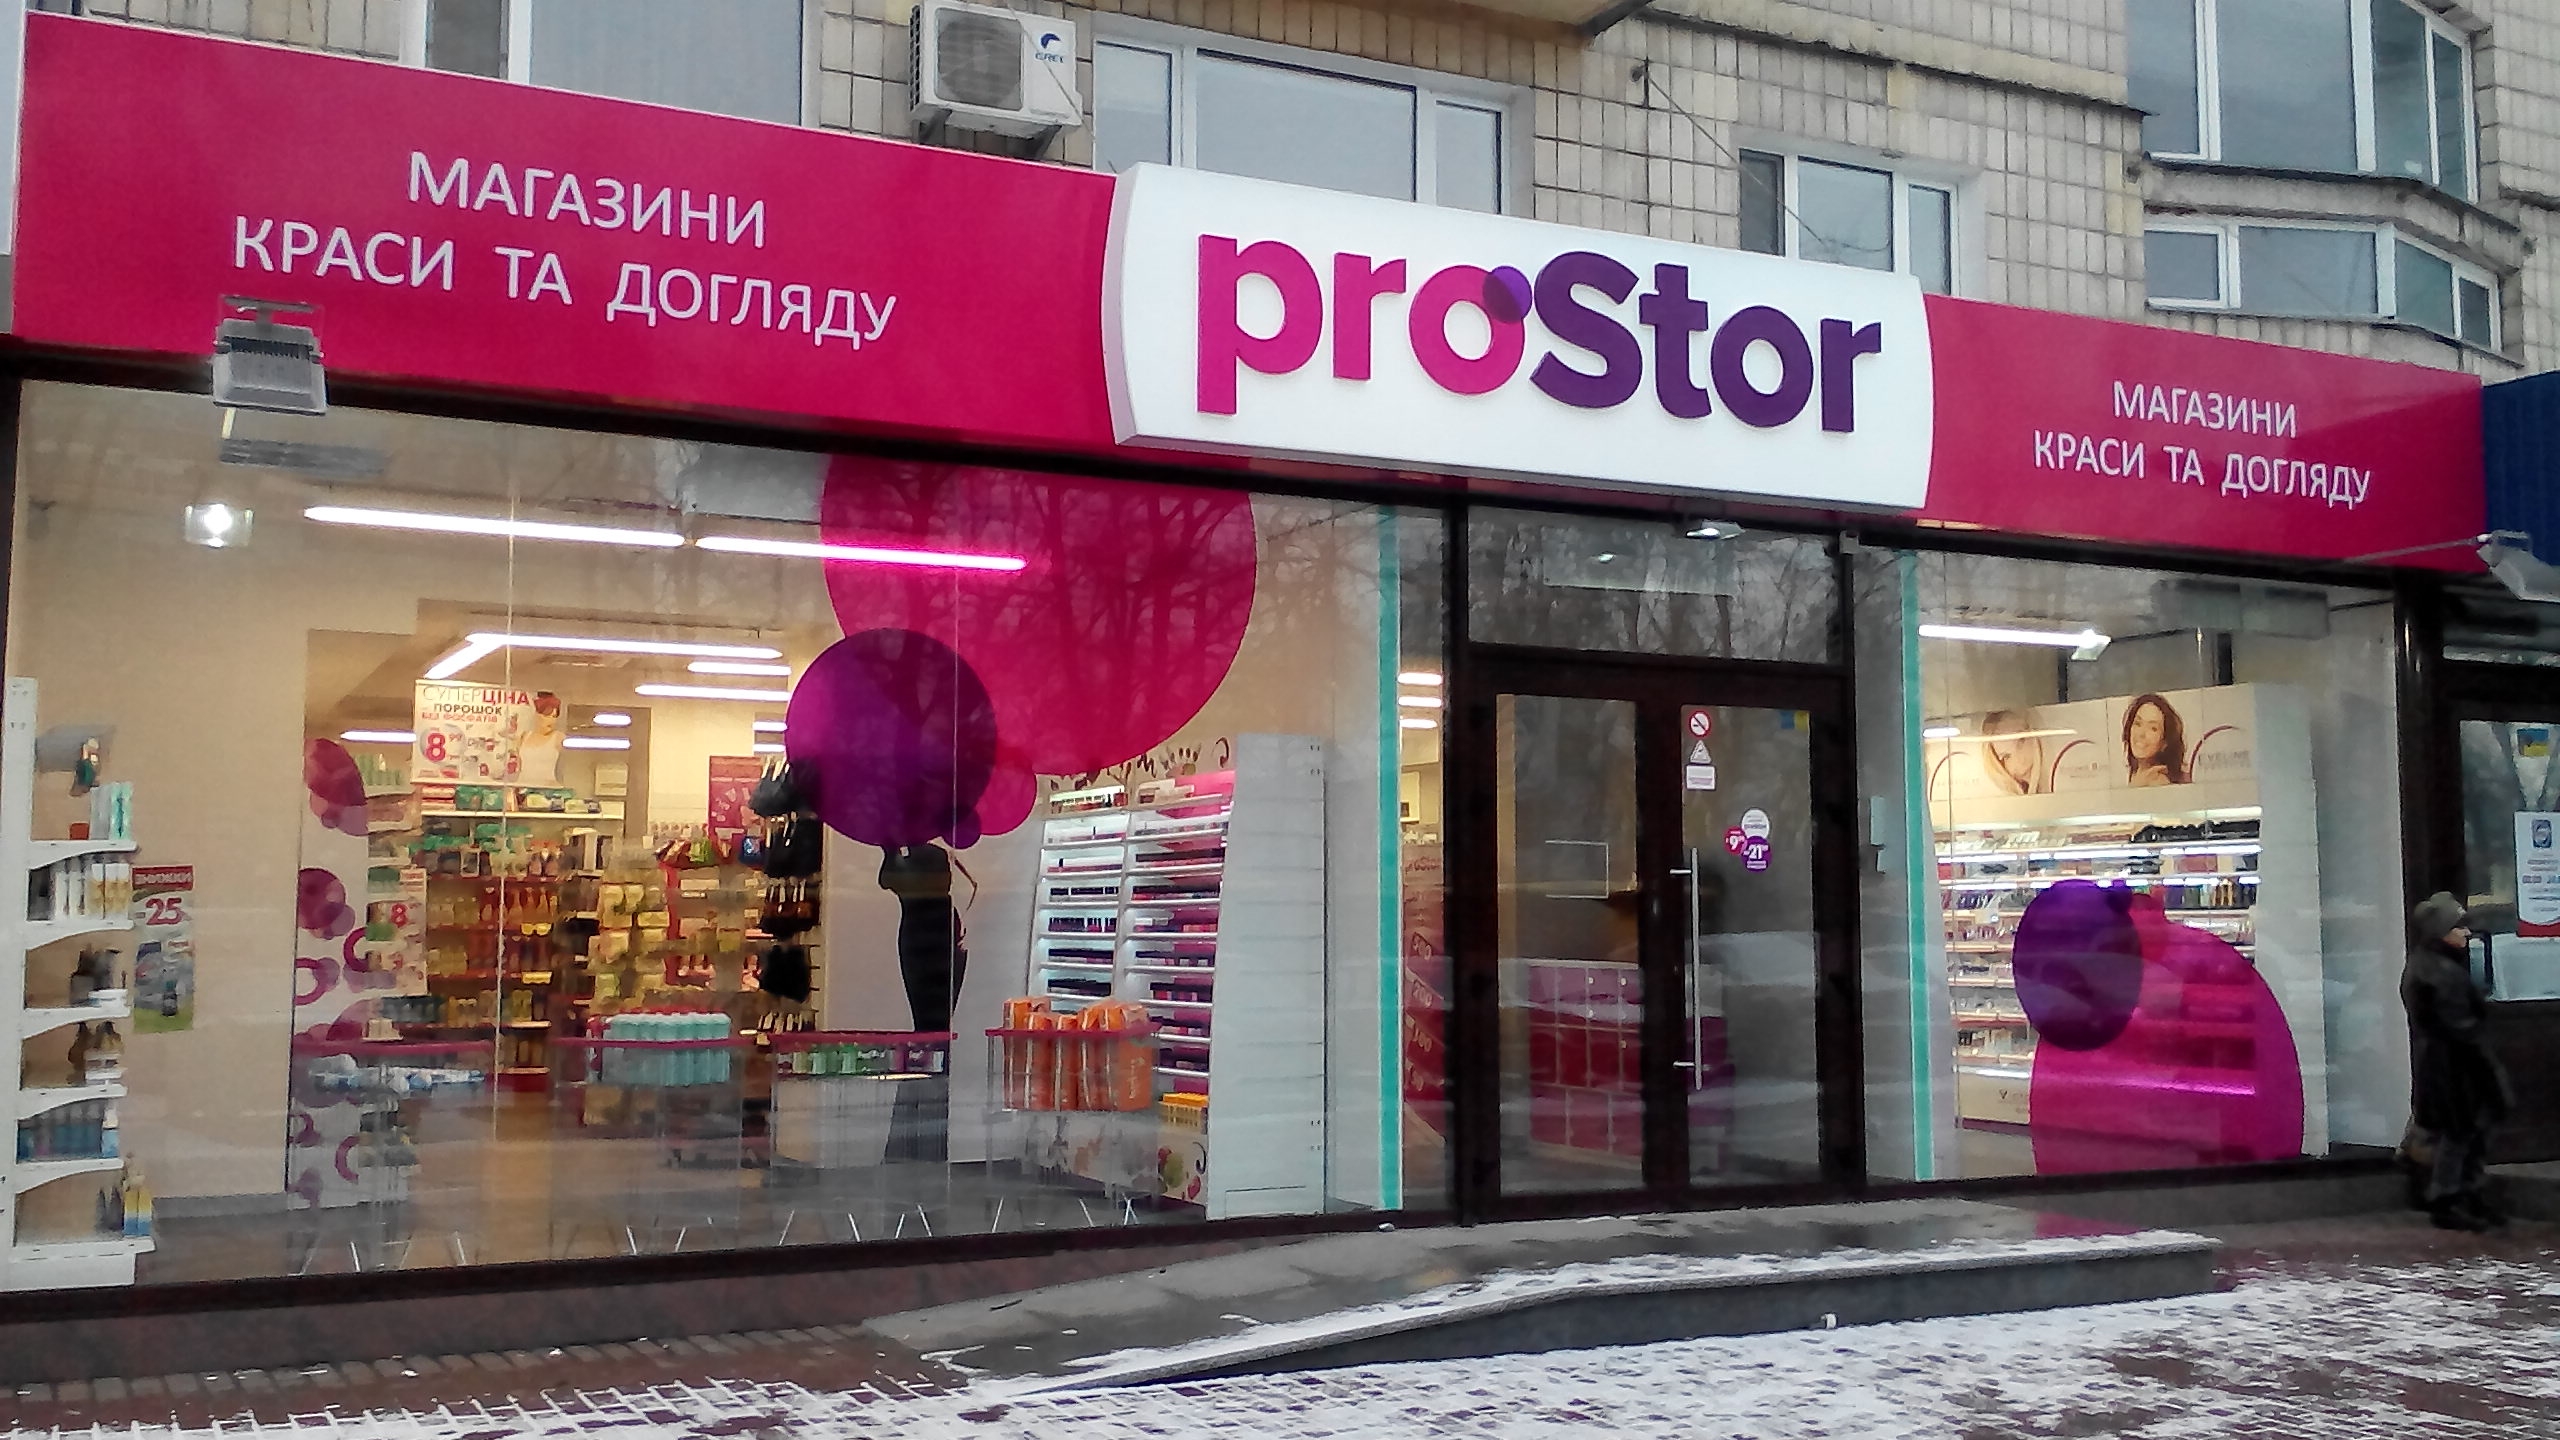 В главном офисе сети магазинов Prostor СБУ проводит обыск: фирма подозревается в связях с боевиками